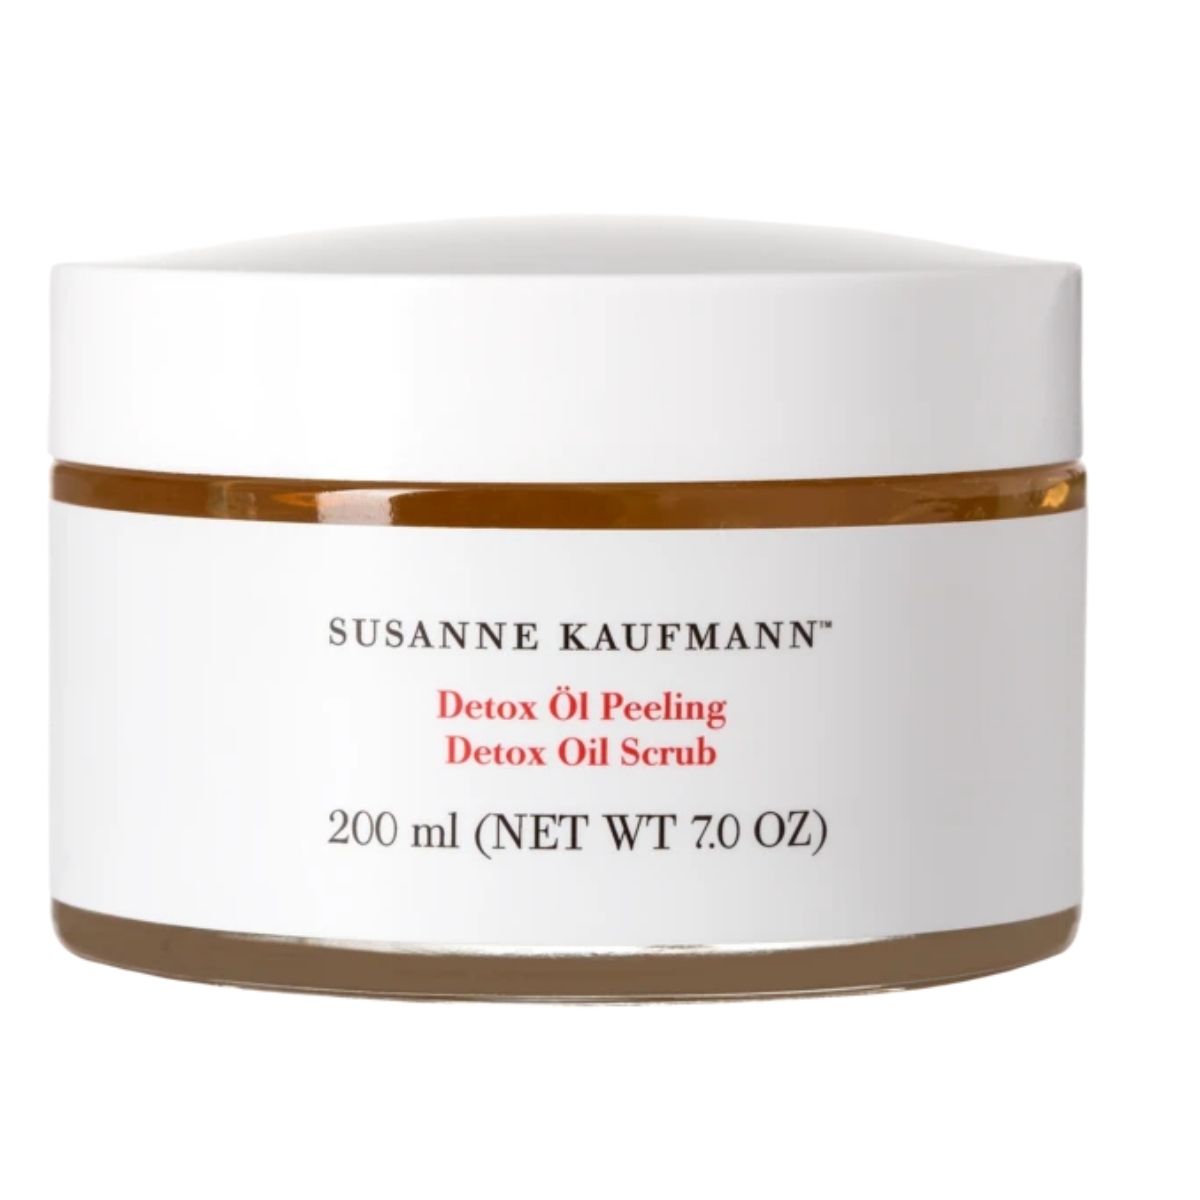 Susanne Kaufmann detox peeling scrub just like luxury spa